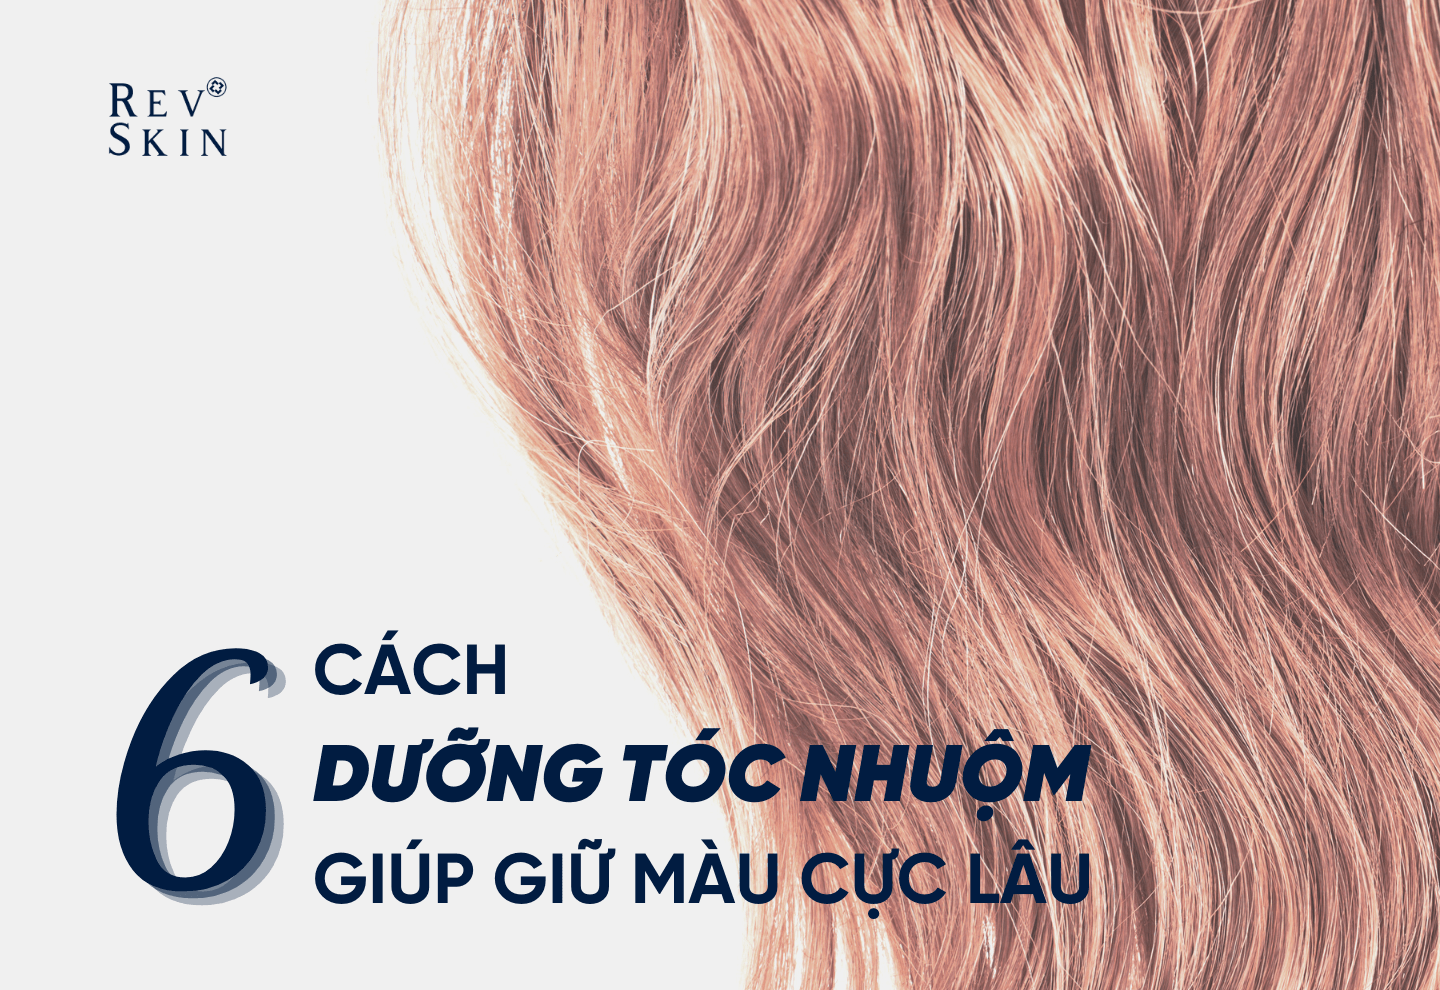 Tóc nhuộm đầy sắc màu đang trở thành xu hướng của nhiều người hiện nay. Và hãy cùng xem qua 6 CÁCH DƯỠNG TÓC NHUỘM GIÚP GIỮ MÀU CỰC LÂU để giữ cho mái tóc của bạn sáng bóng và lâu phai hơn nhé!